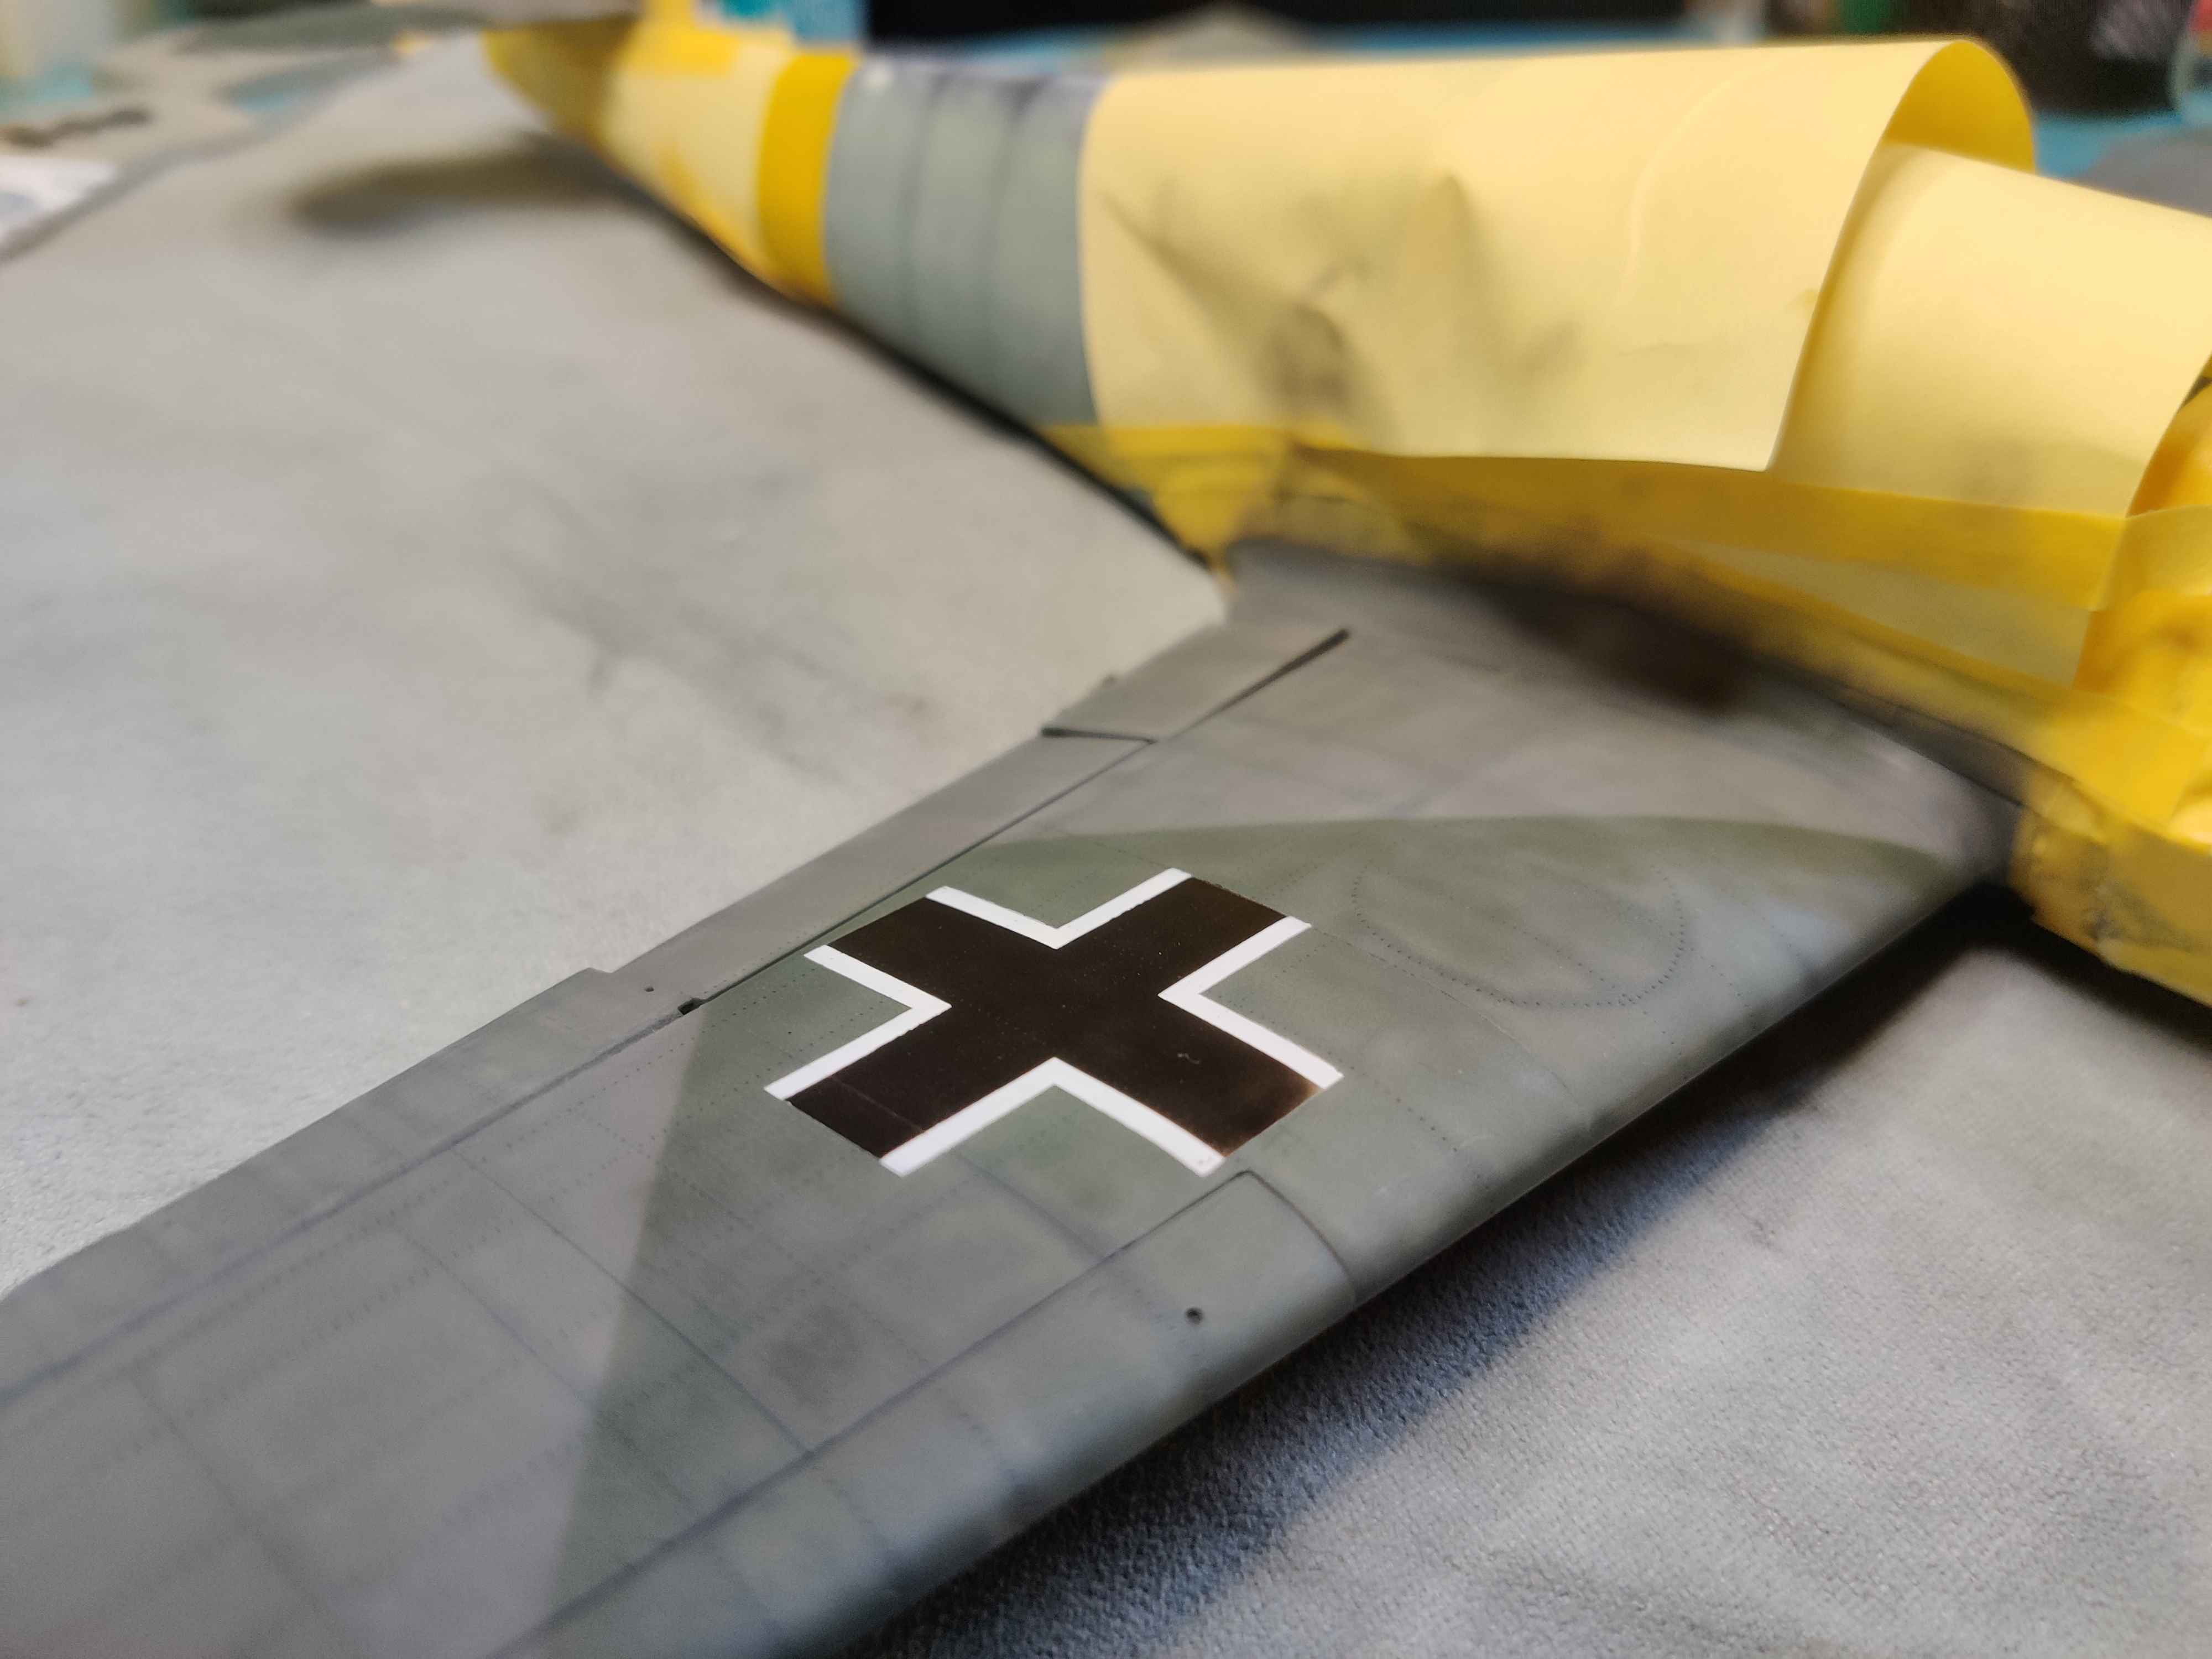 (GB JICEHEM) [REVELL] Messerschmitt Bf 109G-2 de Johannes "Macky" Steinhoff 1/32 - Page 3 Exnt